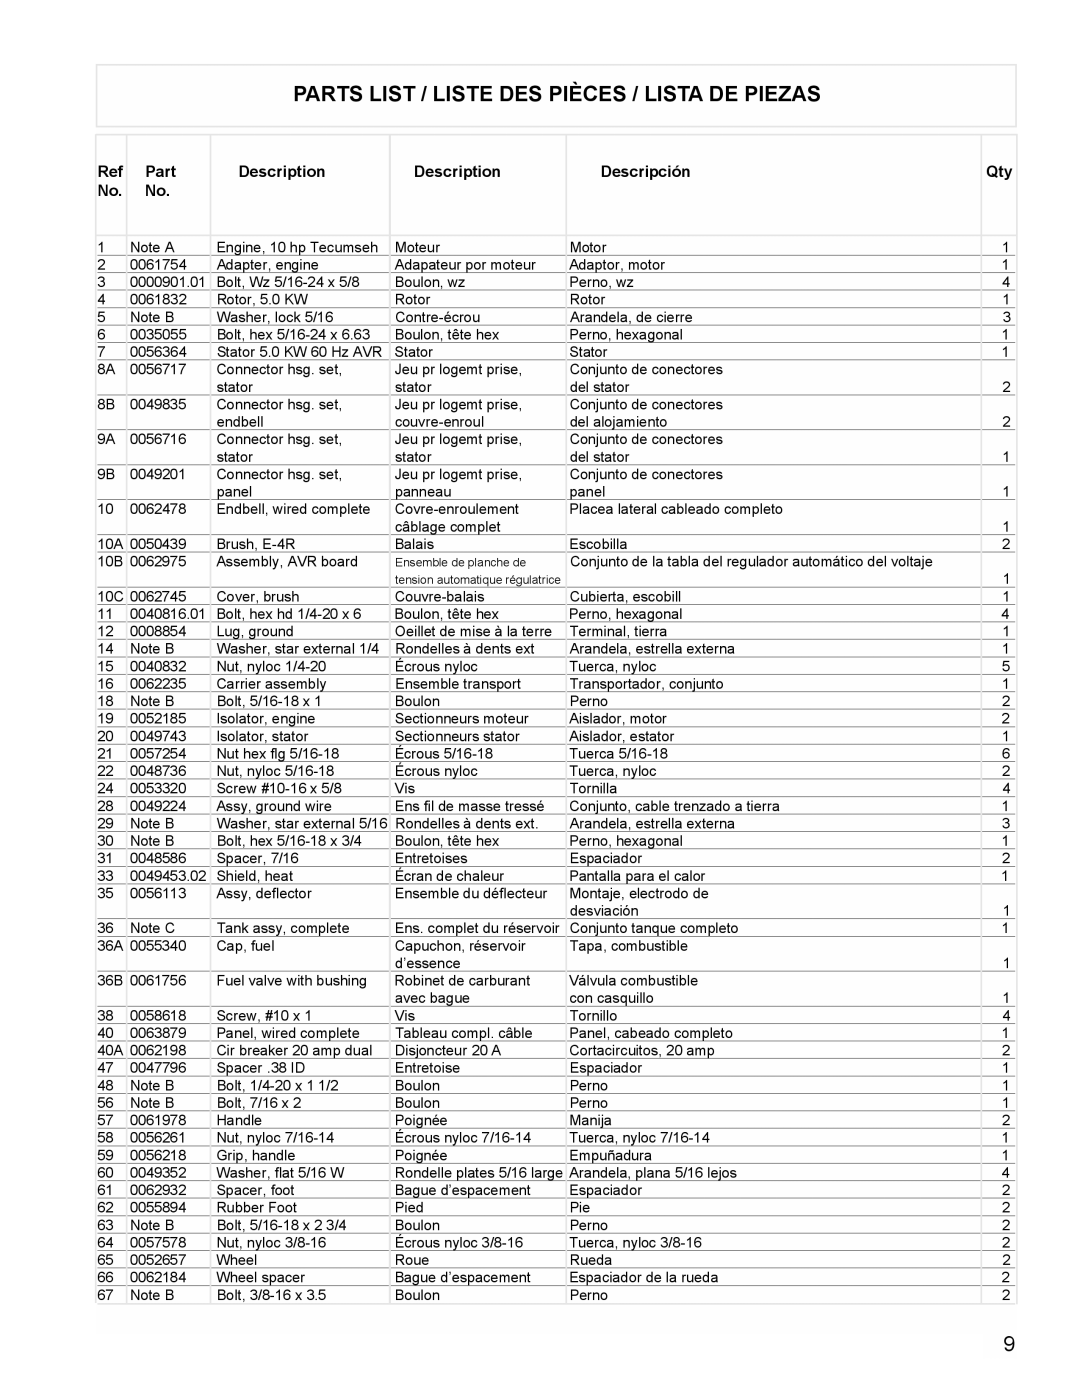 Powermate PC0525305 manual Parts List / Liste Des Pièces / Lista De Piezas, Description, Descripción 